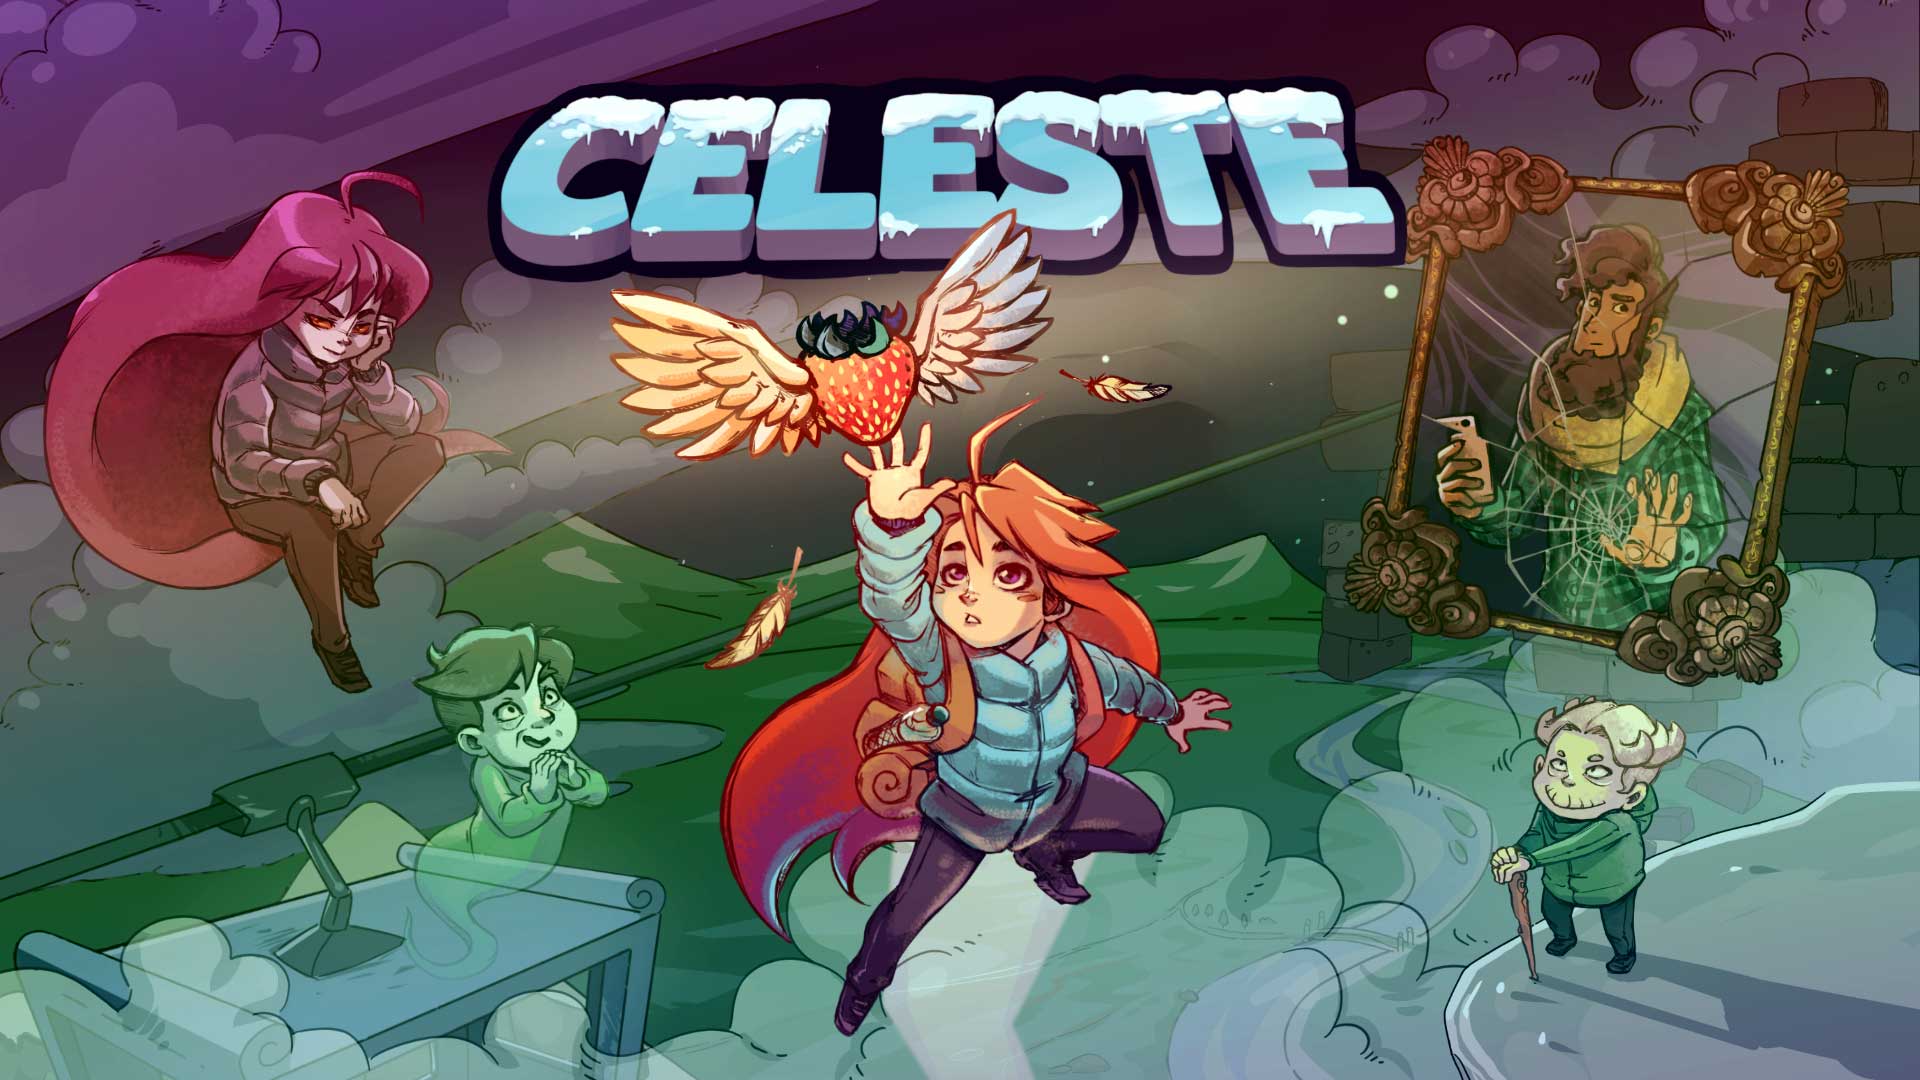 بازی Celeste (سلست) با نمره ۱۰ از ۱۰ زومجی در سرویس پلی استیشن Now سونی